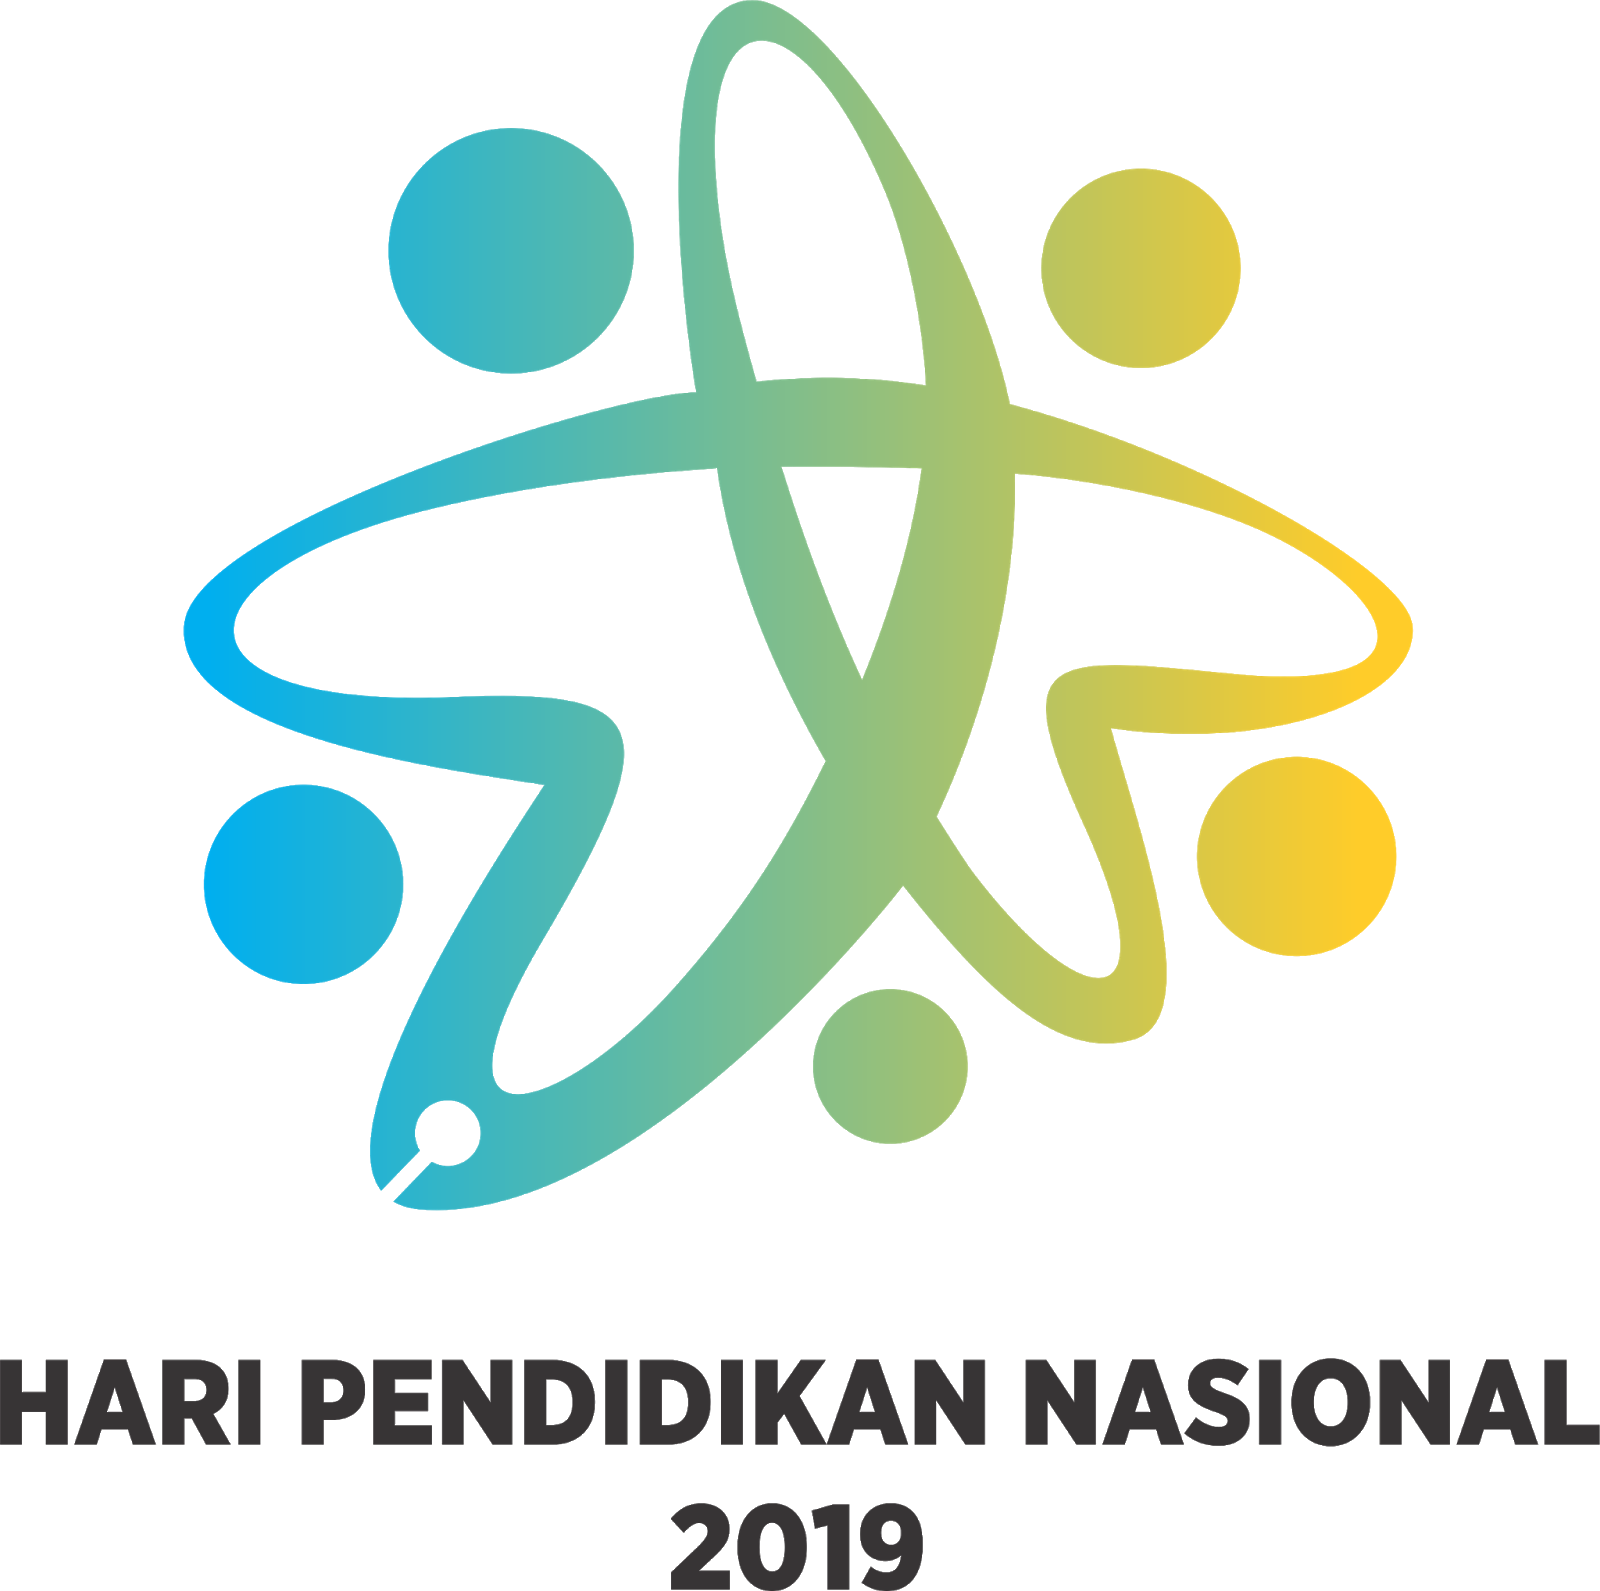 Desain Banner Hari Pendidikan Nasional (Hardiknas) 2019 cdr | Kumpulan